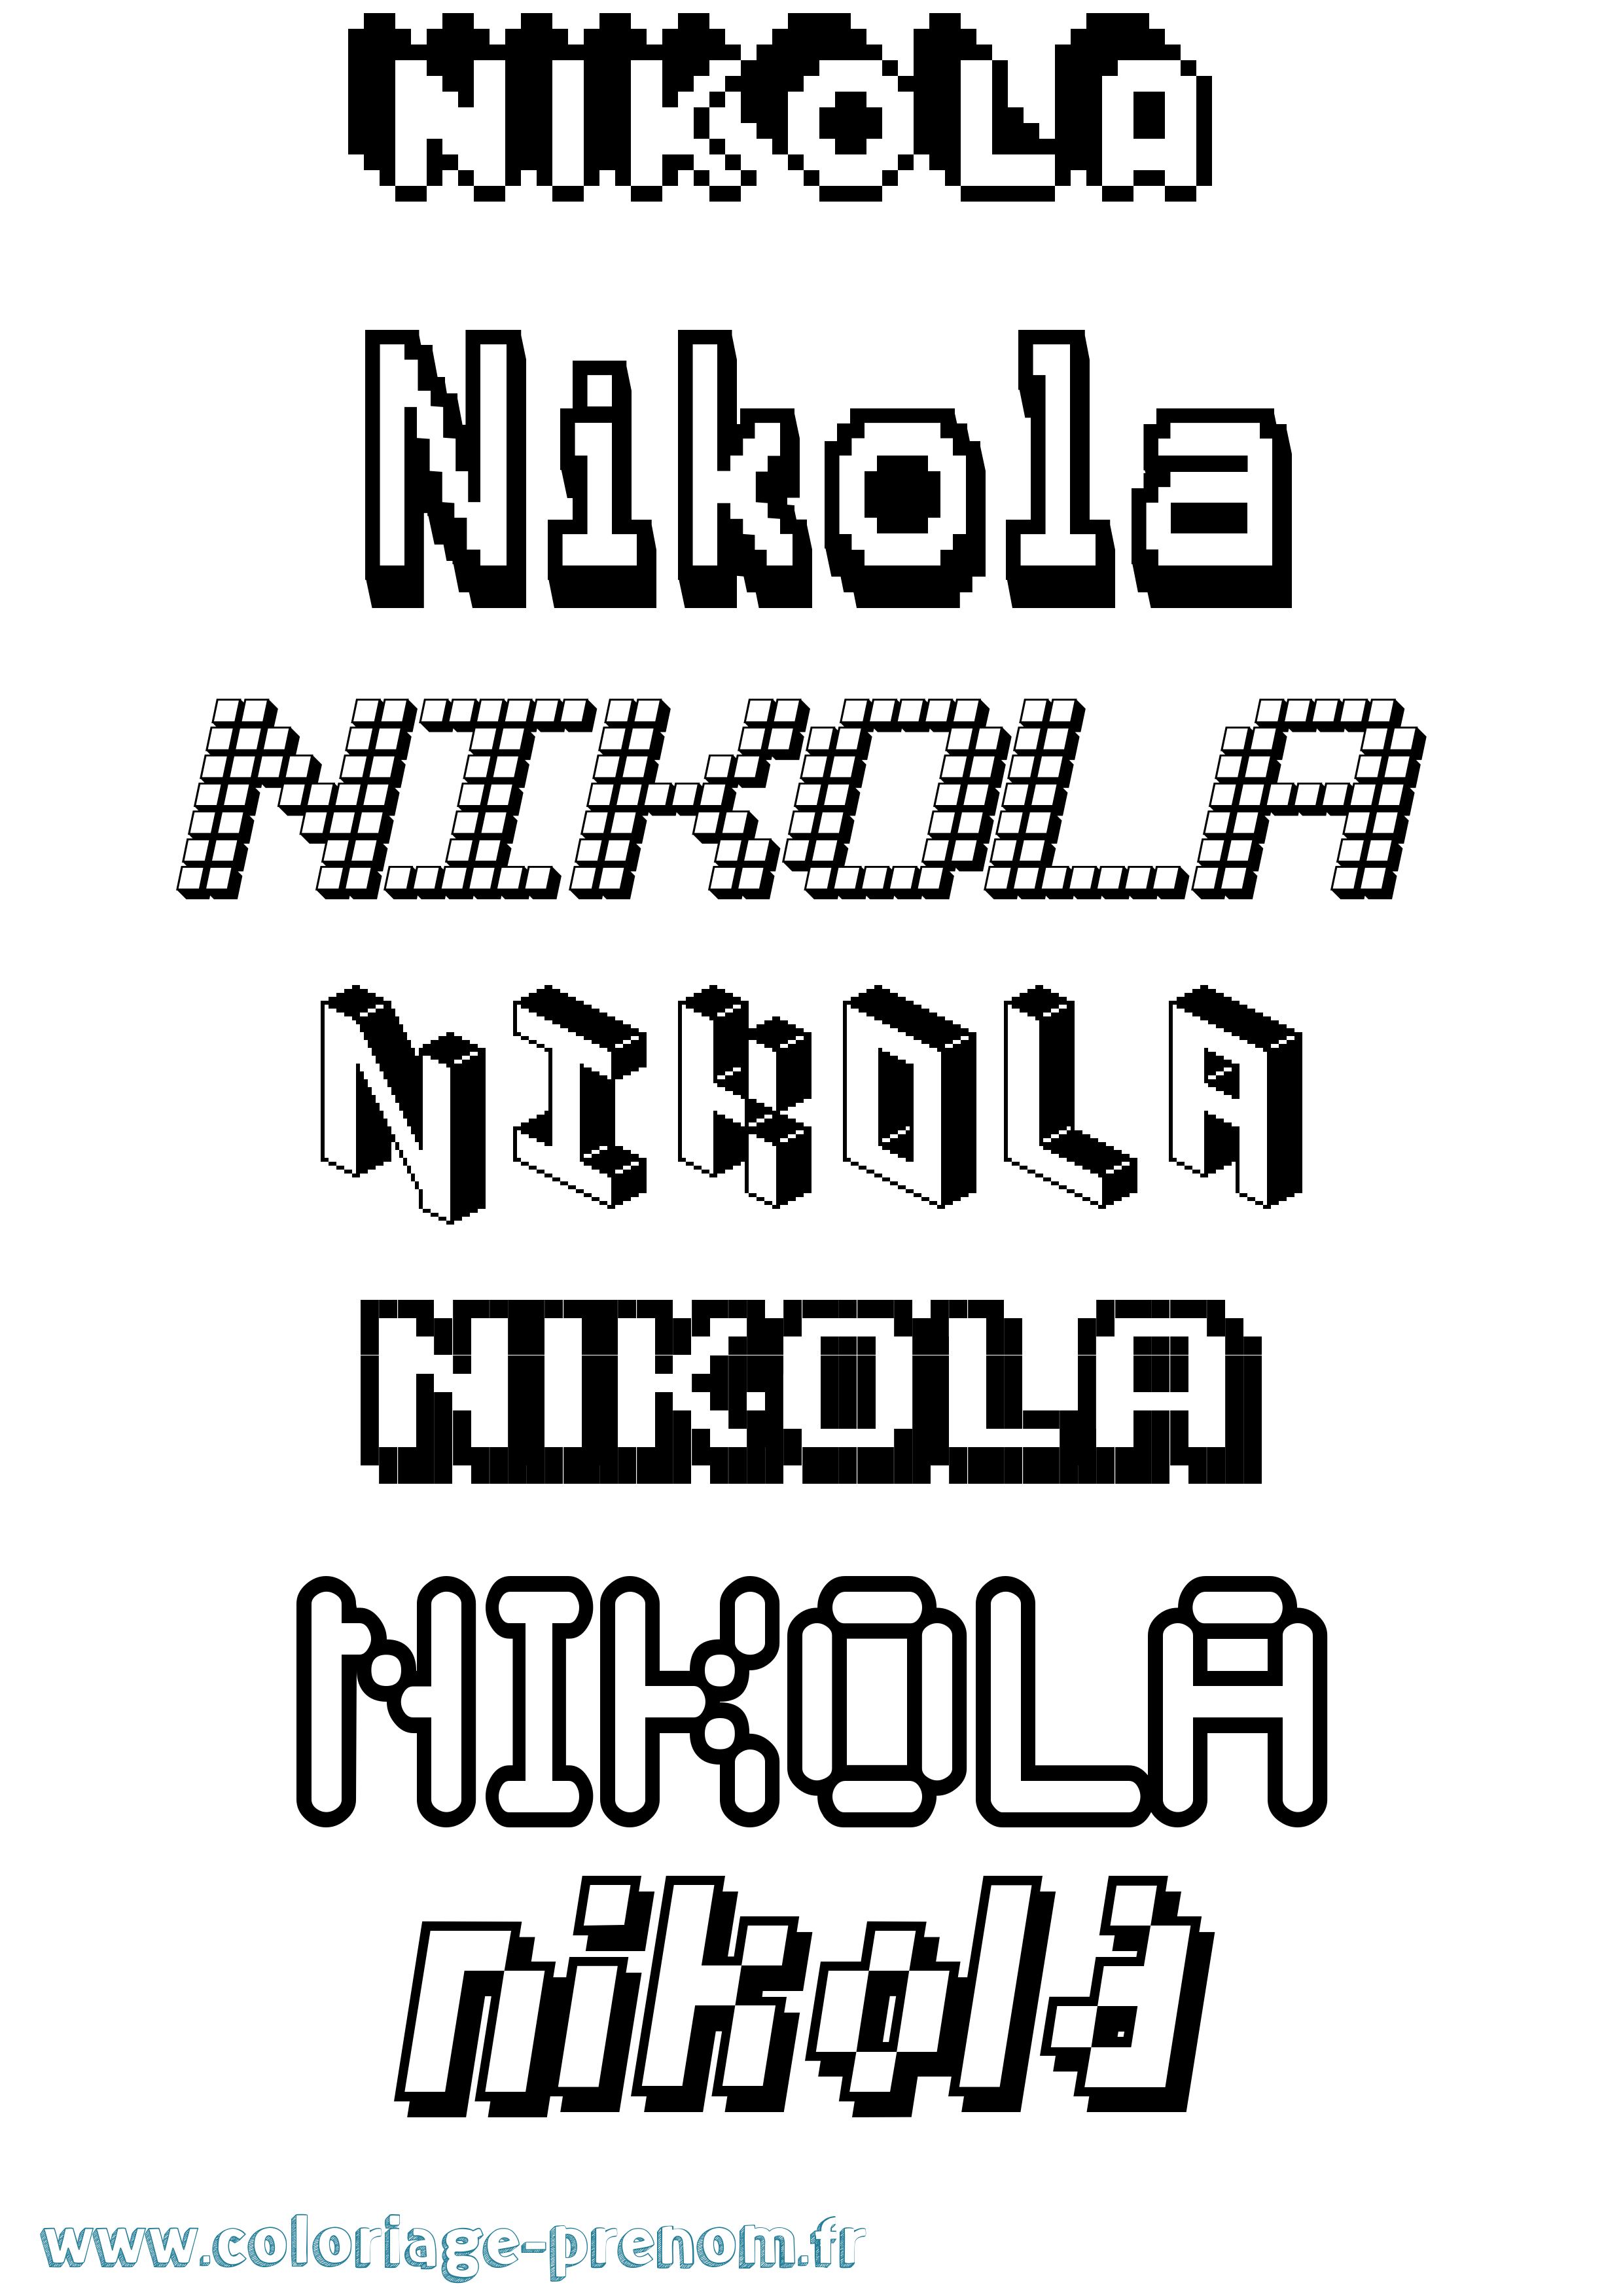 Coloriage prénom Nikola Pixel